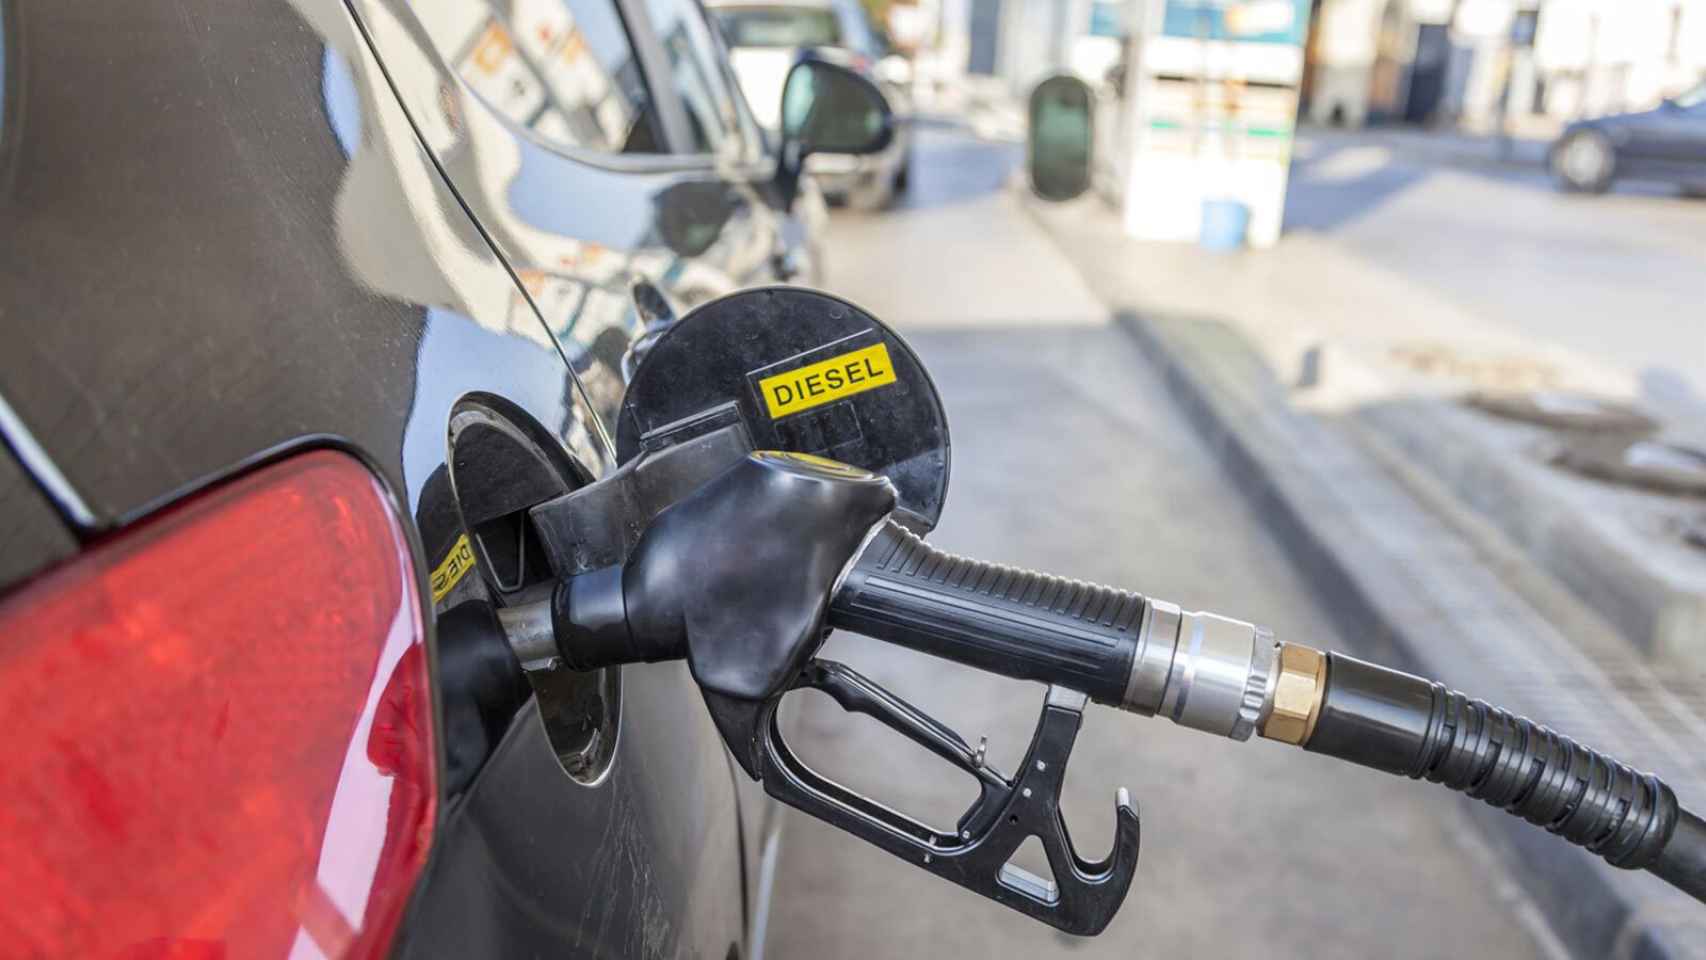 Al diésel no le afectarían estos problemas que sí ocurren en la gasolina.